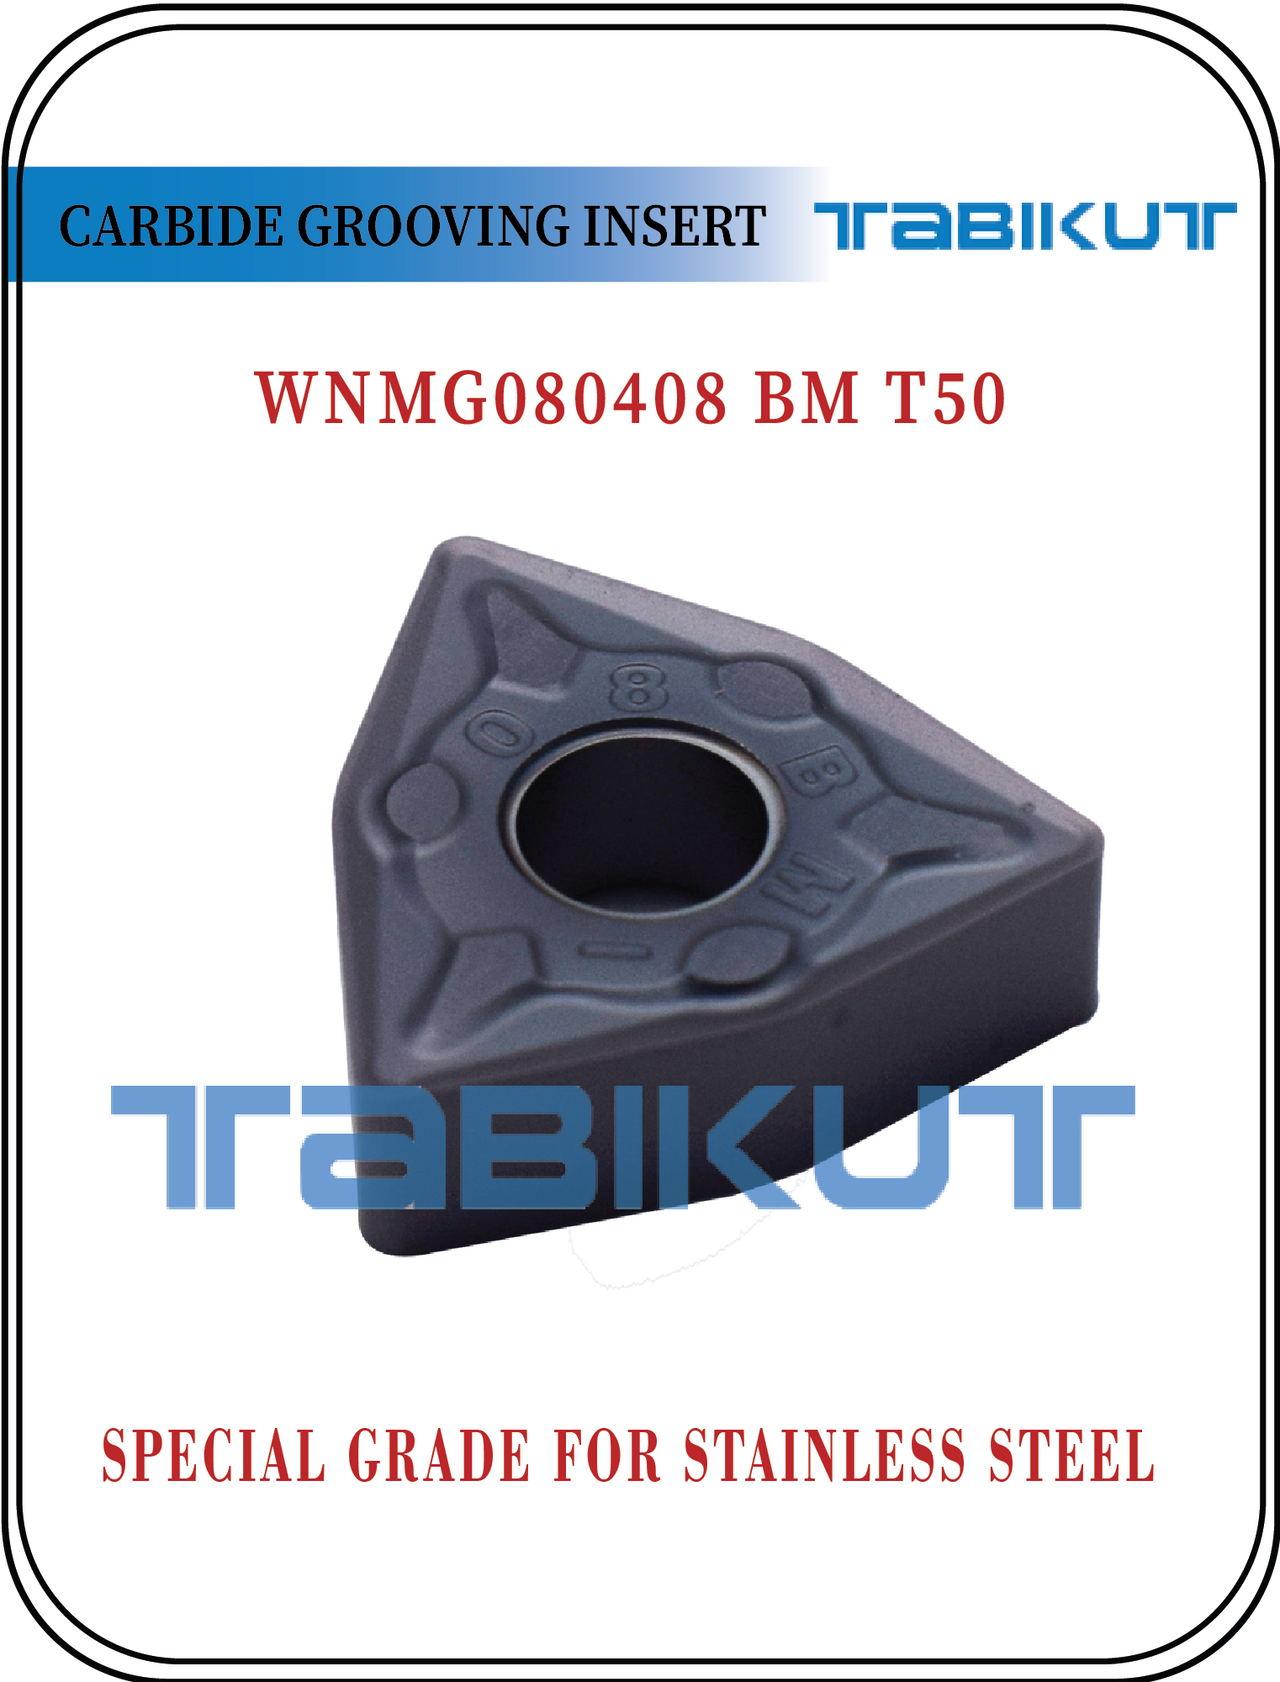 WNMG080408 BM T50 Stainless Steel Grade